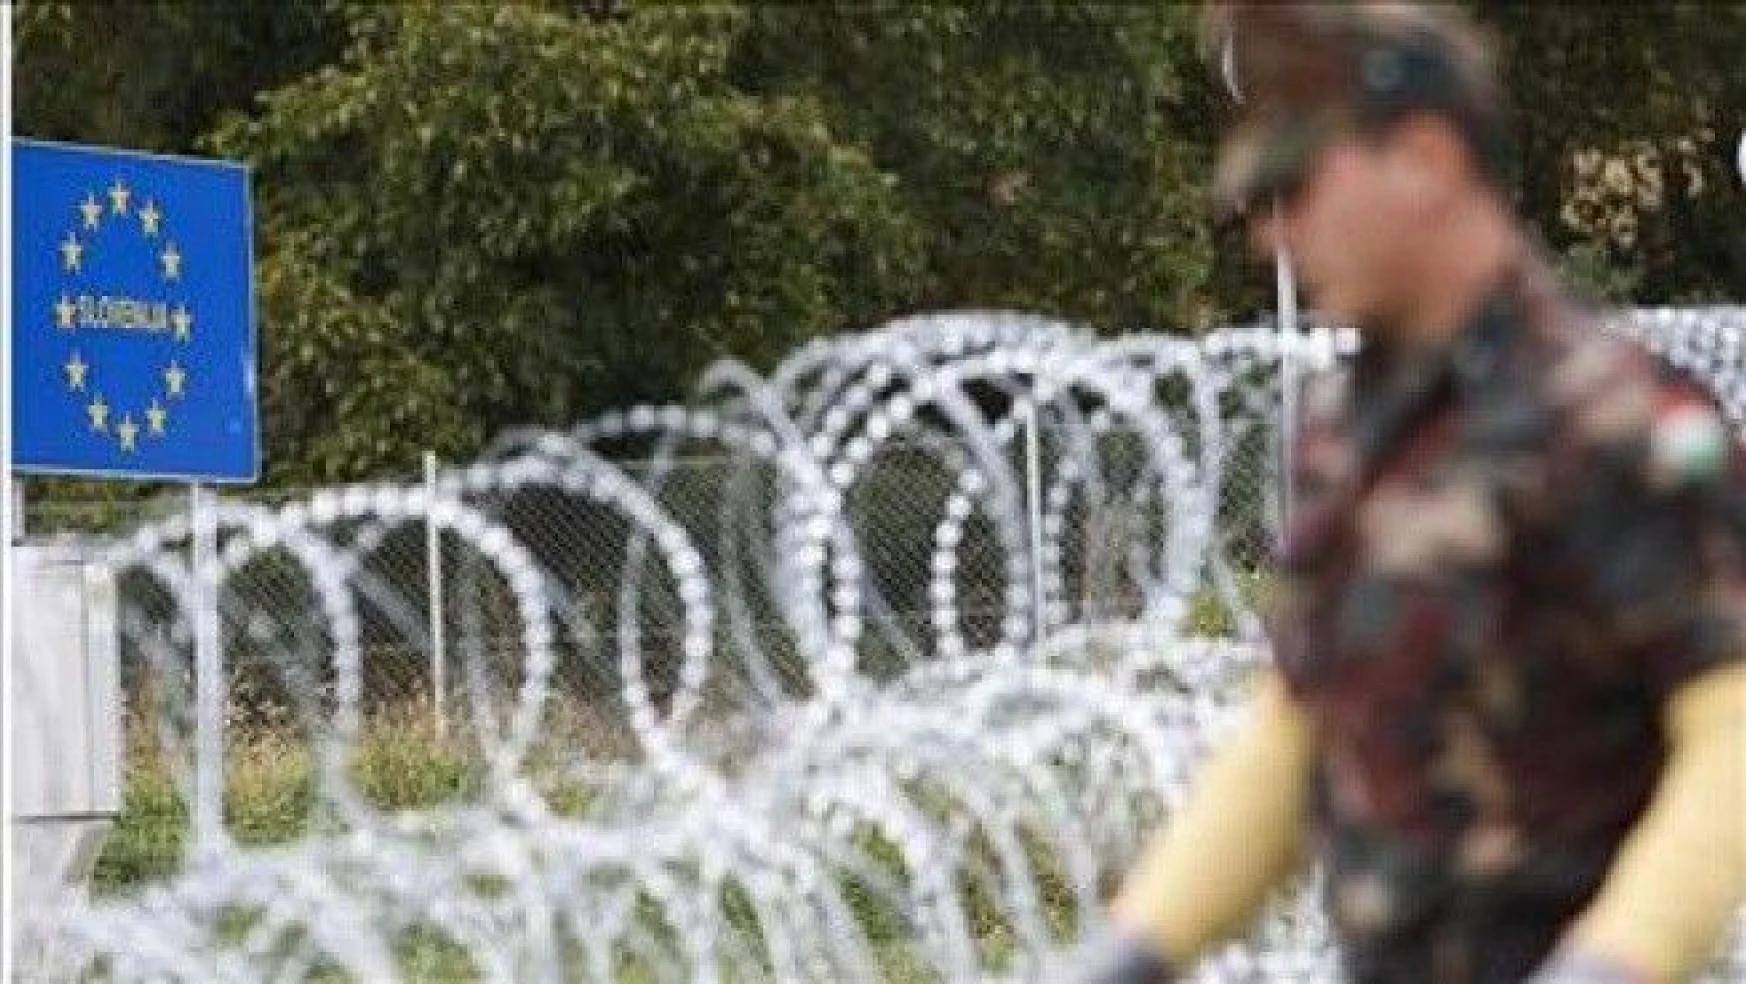 Avusturya, Slovenya sınırına çit çekiyor